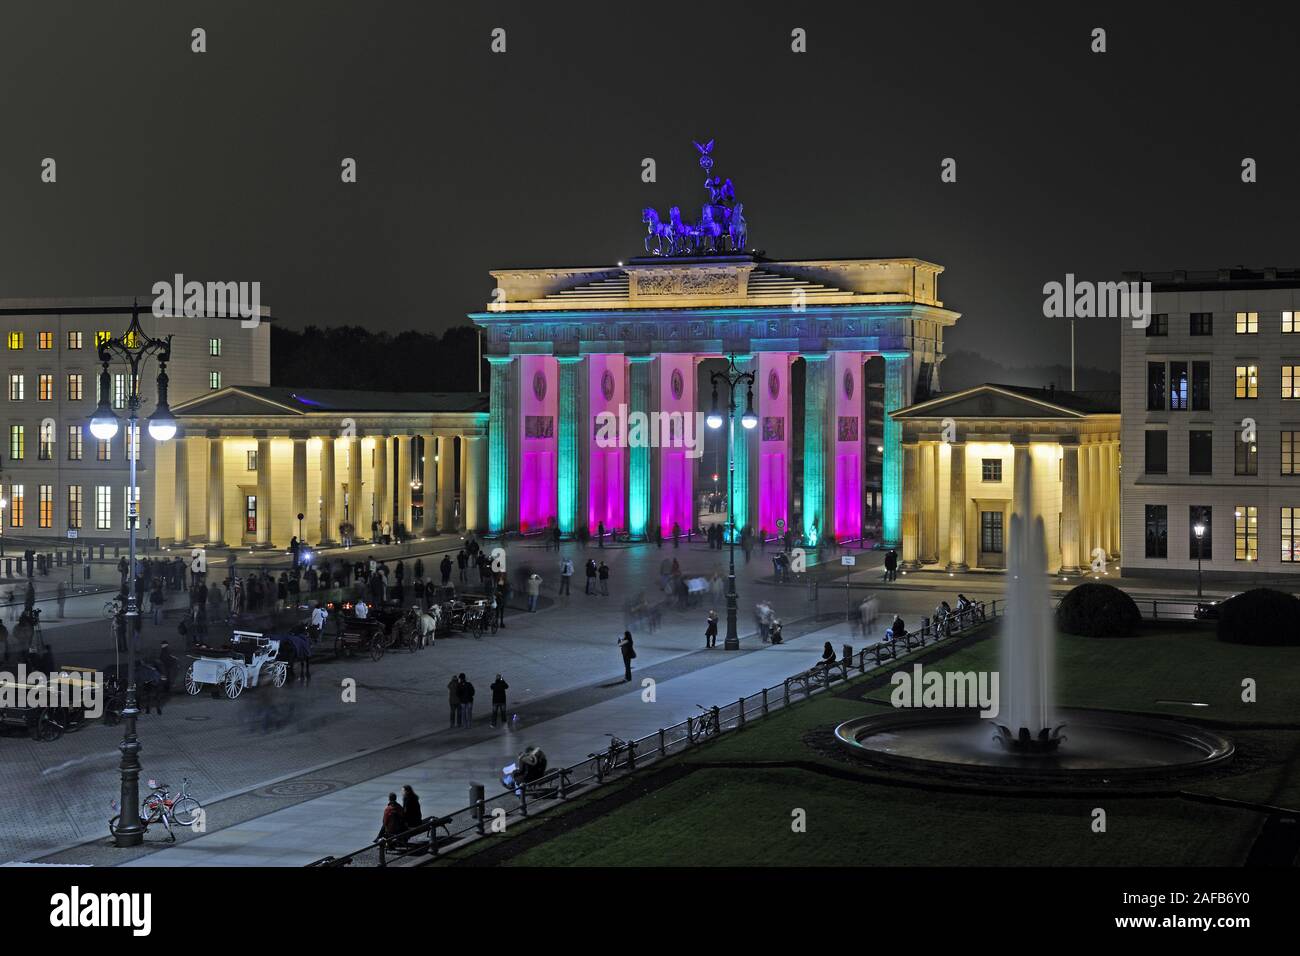 Brandenburger Tor am Pariser Platz, Berlin, Deutschland, Europa, illuminiert zum Festival of Lights 2009 Stock Photo